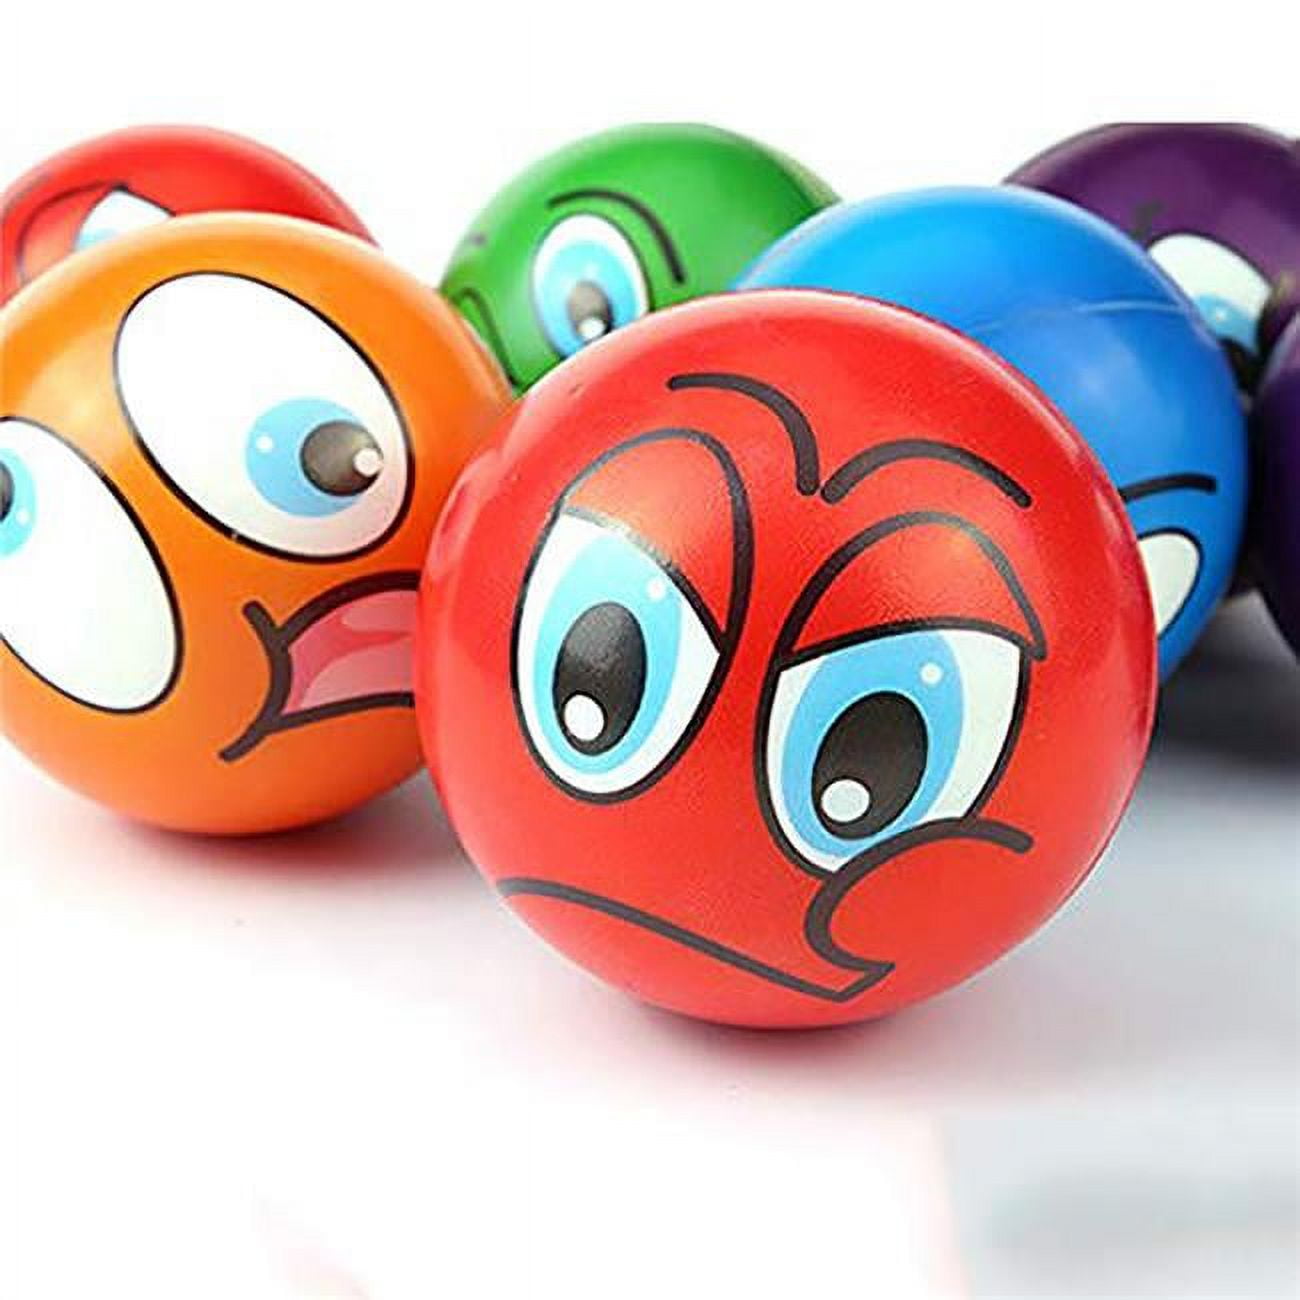 Psbf24 Mini Emoji Soft Foam Stress Balls - 24 Balls Per Box